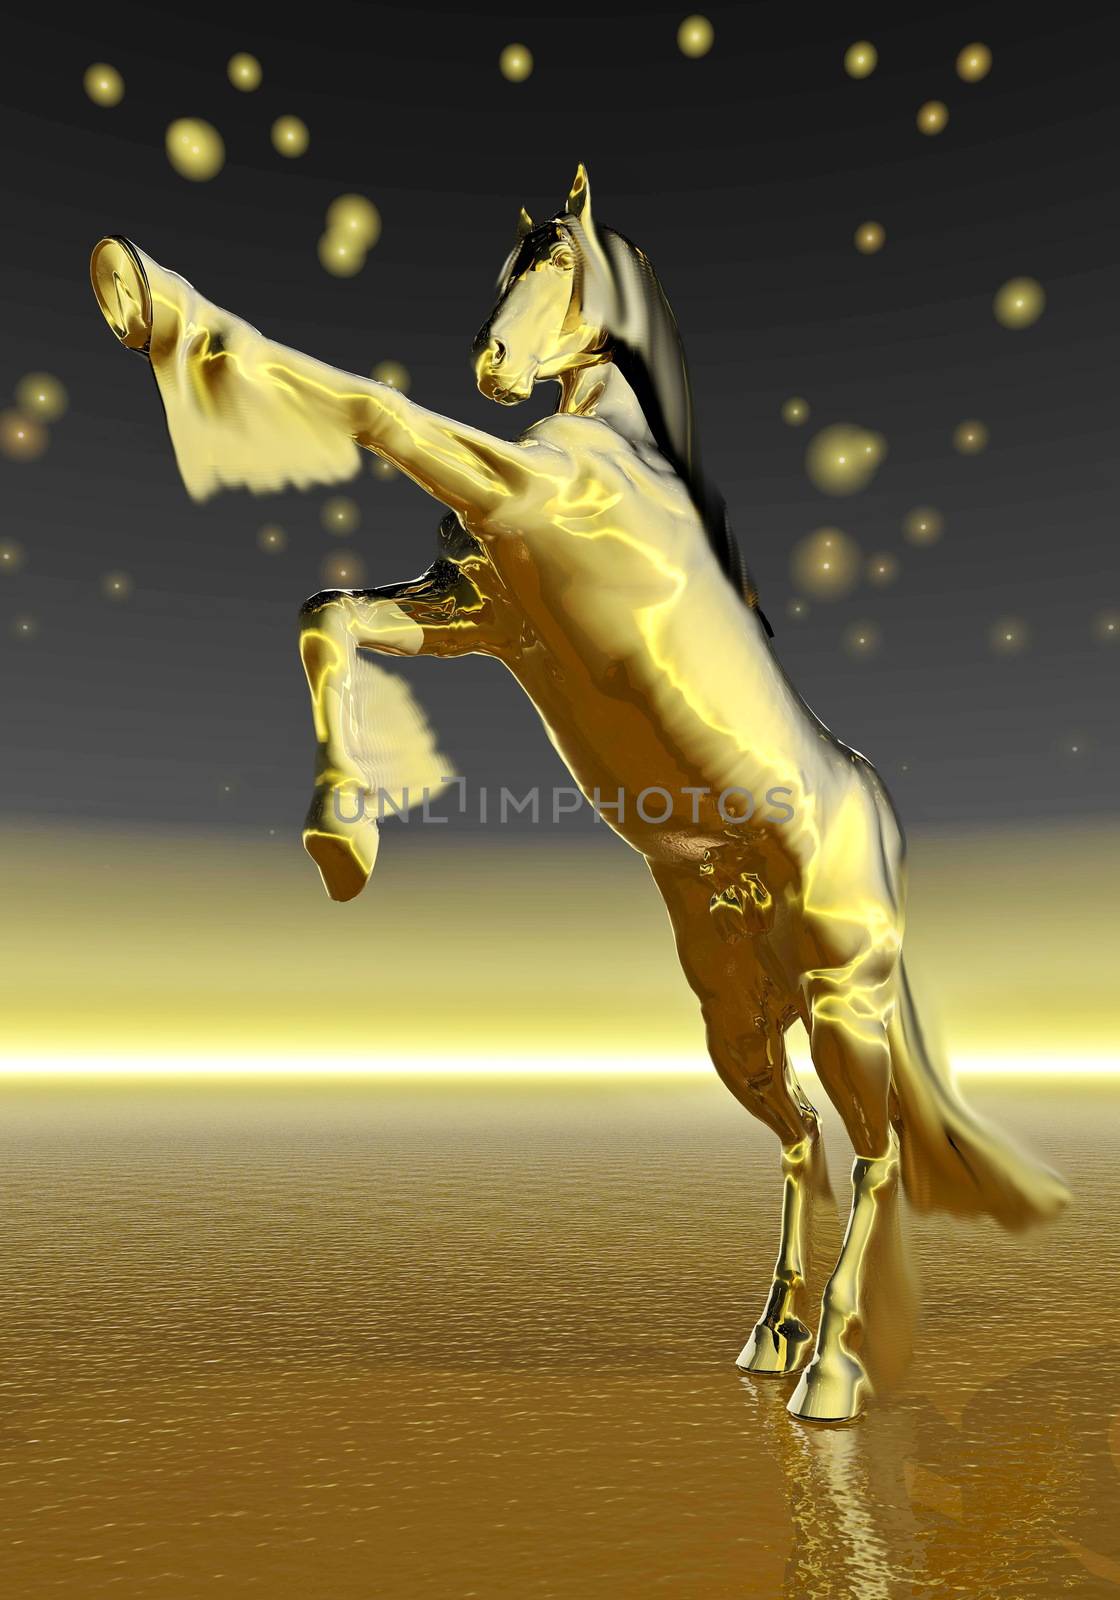 Golden rearing horse - 3D render by Elenaphotos21